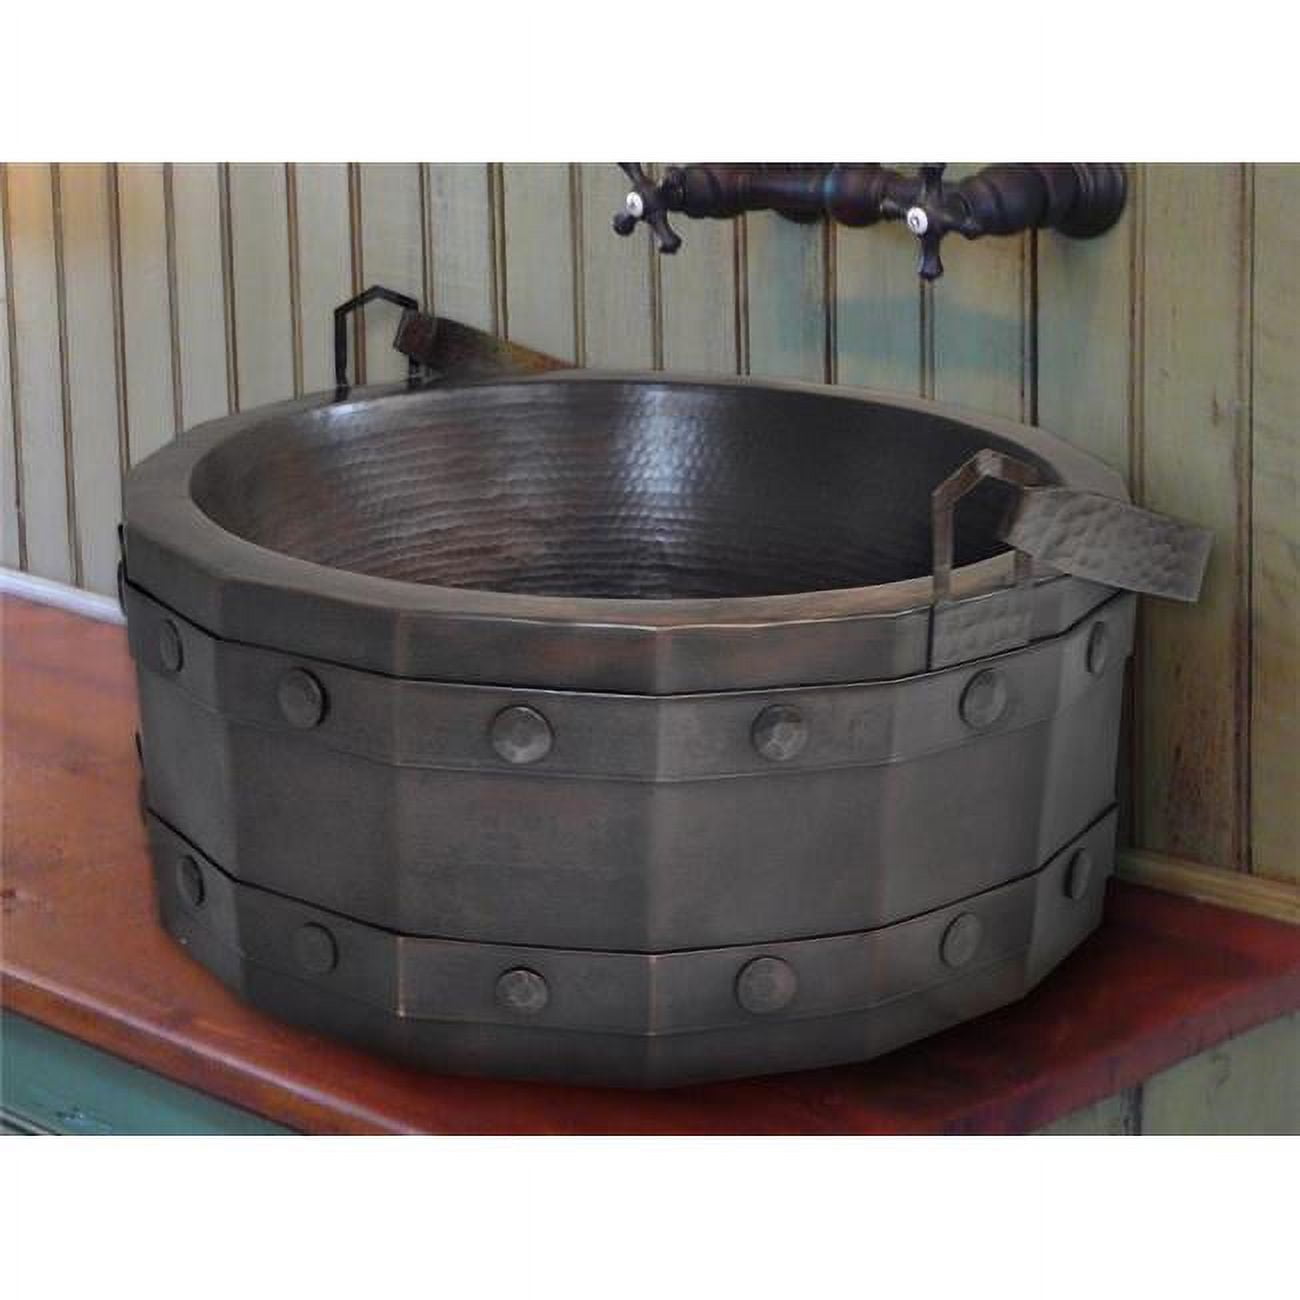 Crvs-bk-17-dl Copper Round Vessel Sink, Dark Light - Bucket Design - 7 X 17 X 17 In.